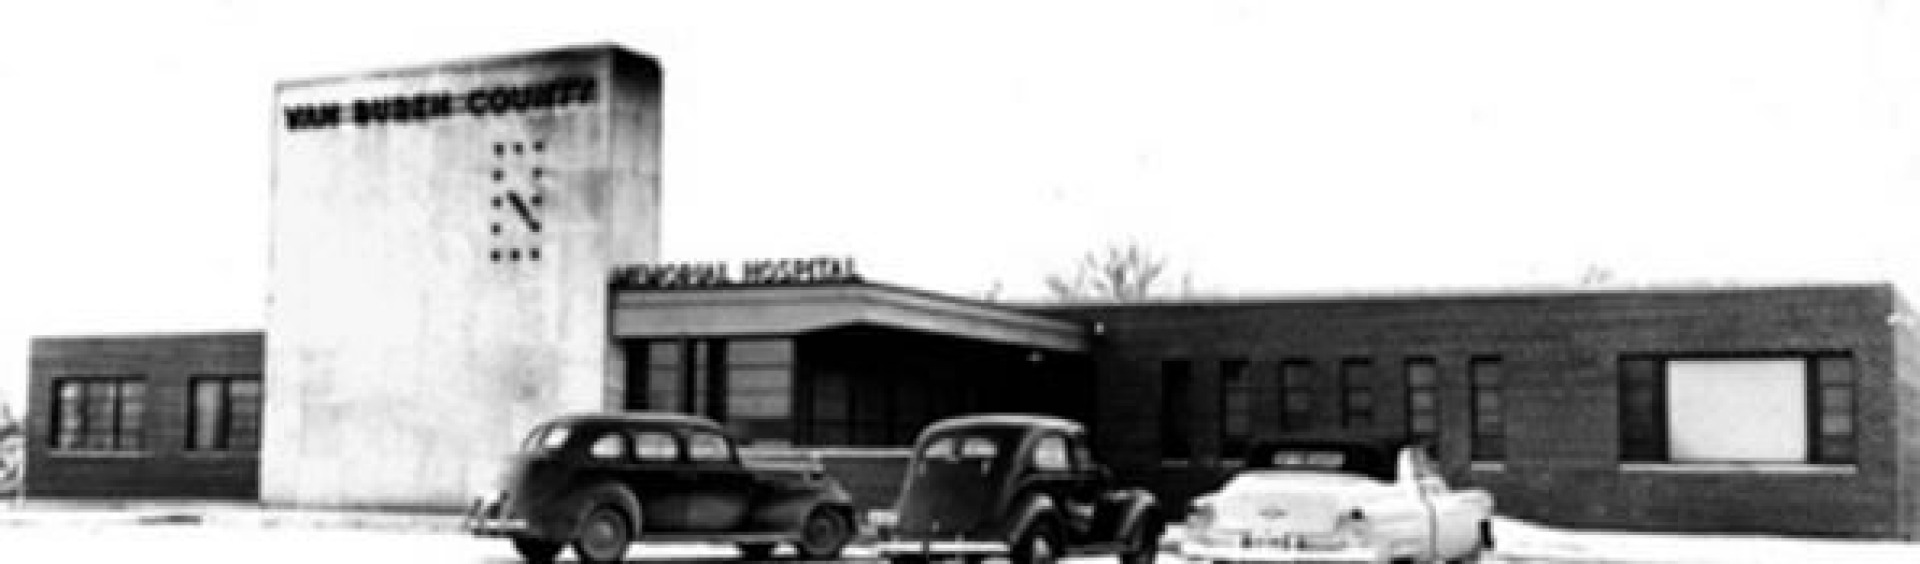 Van Buren County Hospital in the mid-1900s.